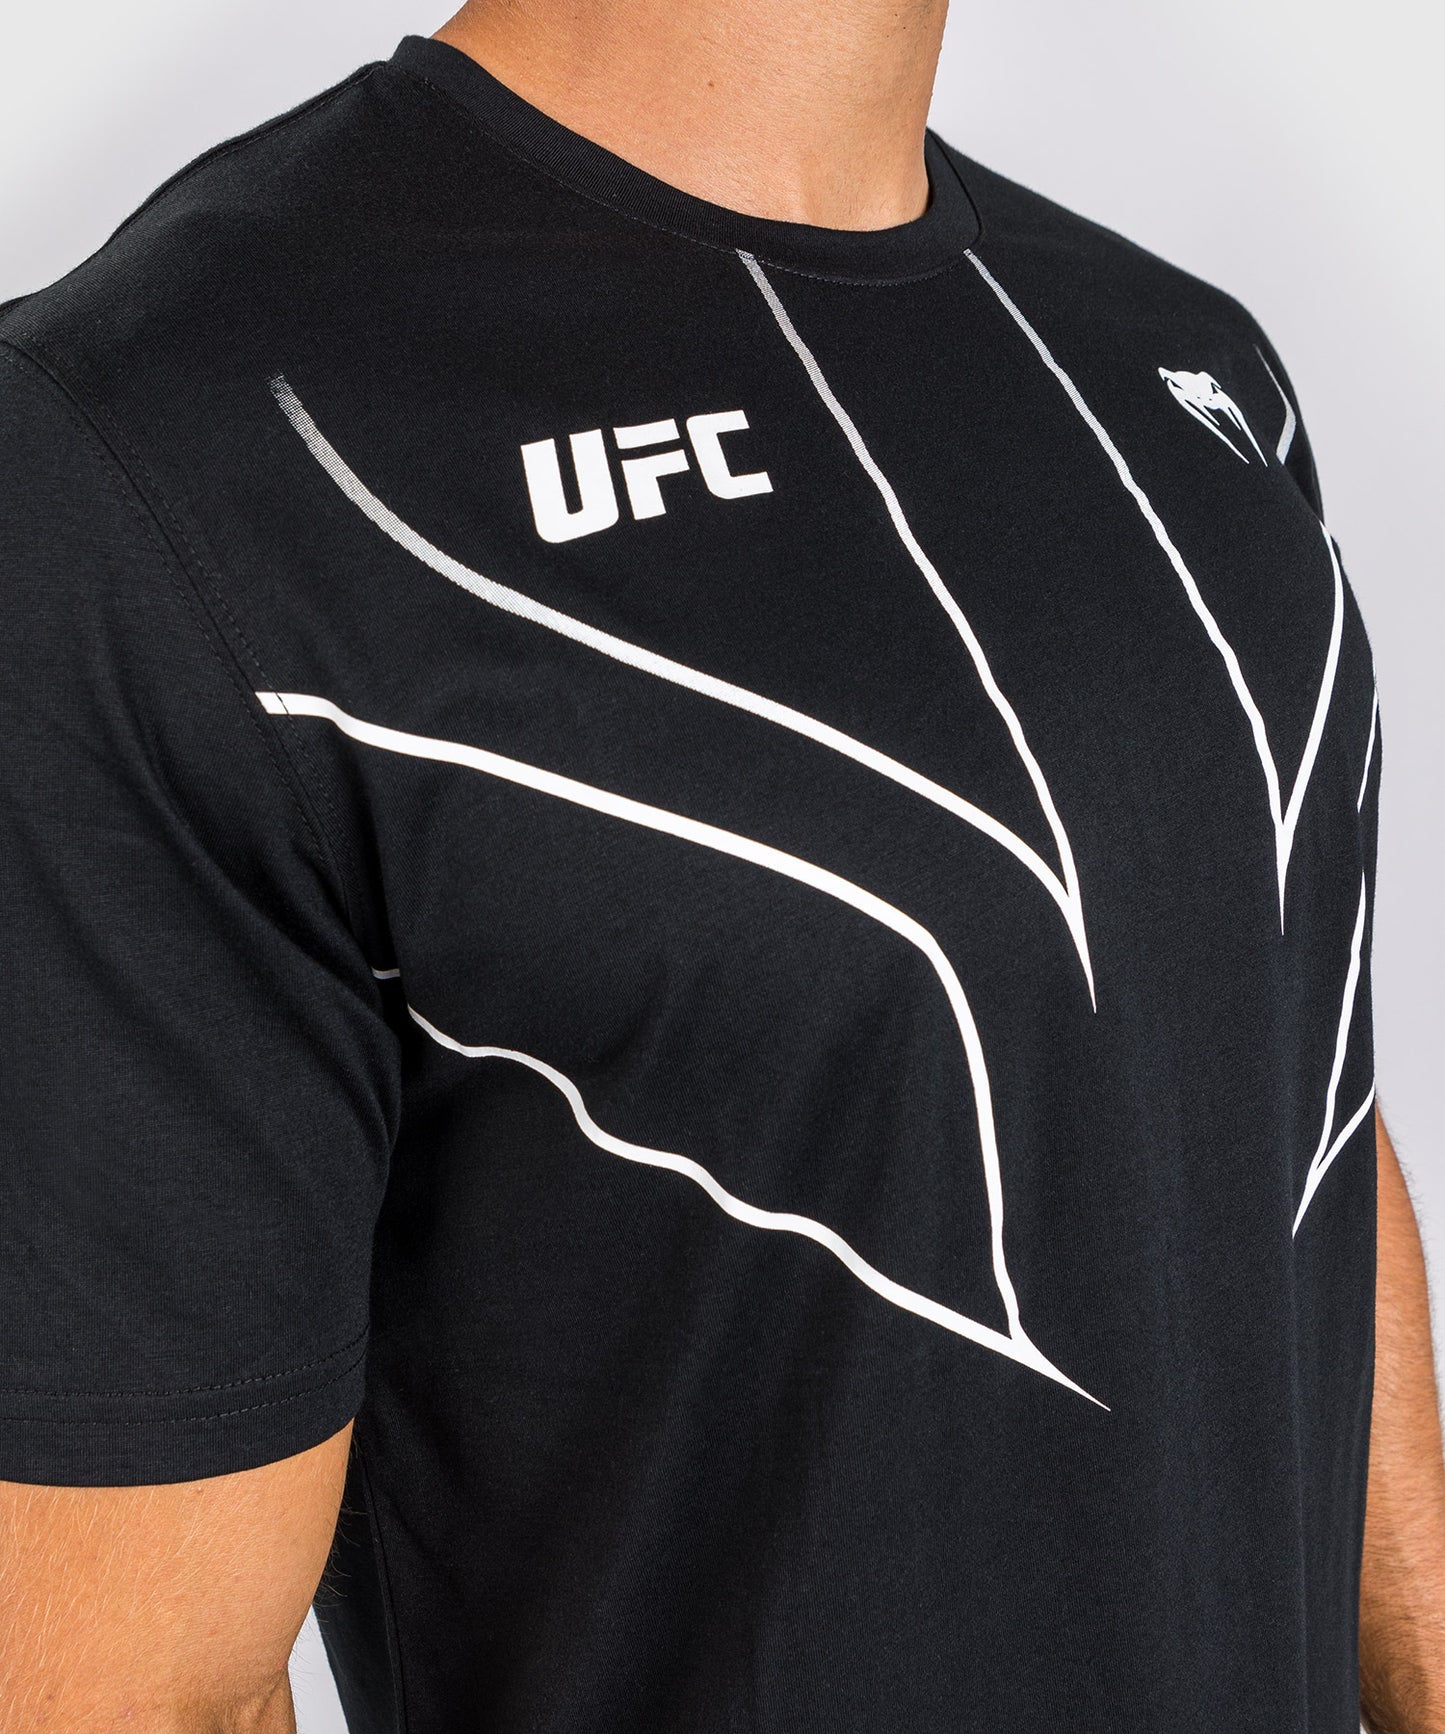 Camiseta UFC Venum Replica 2.0 - Hombre - Negro